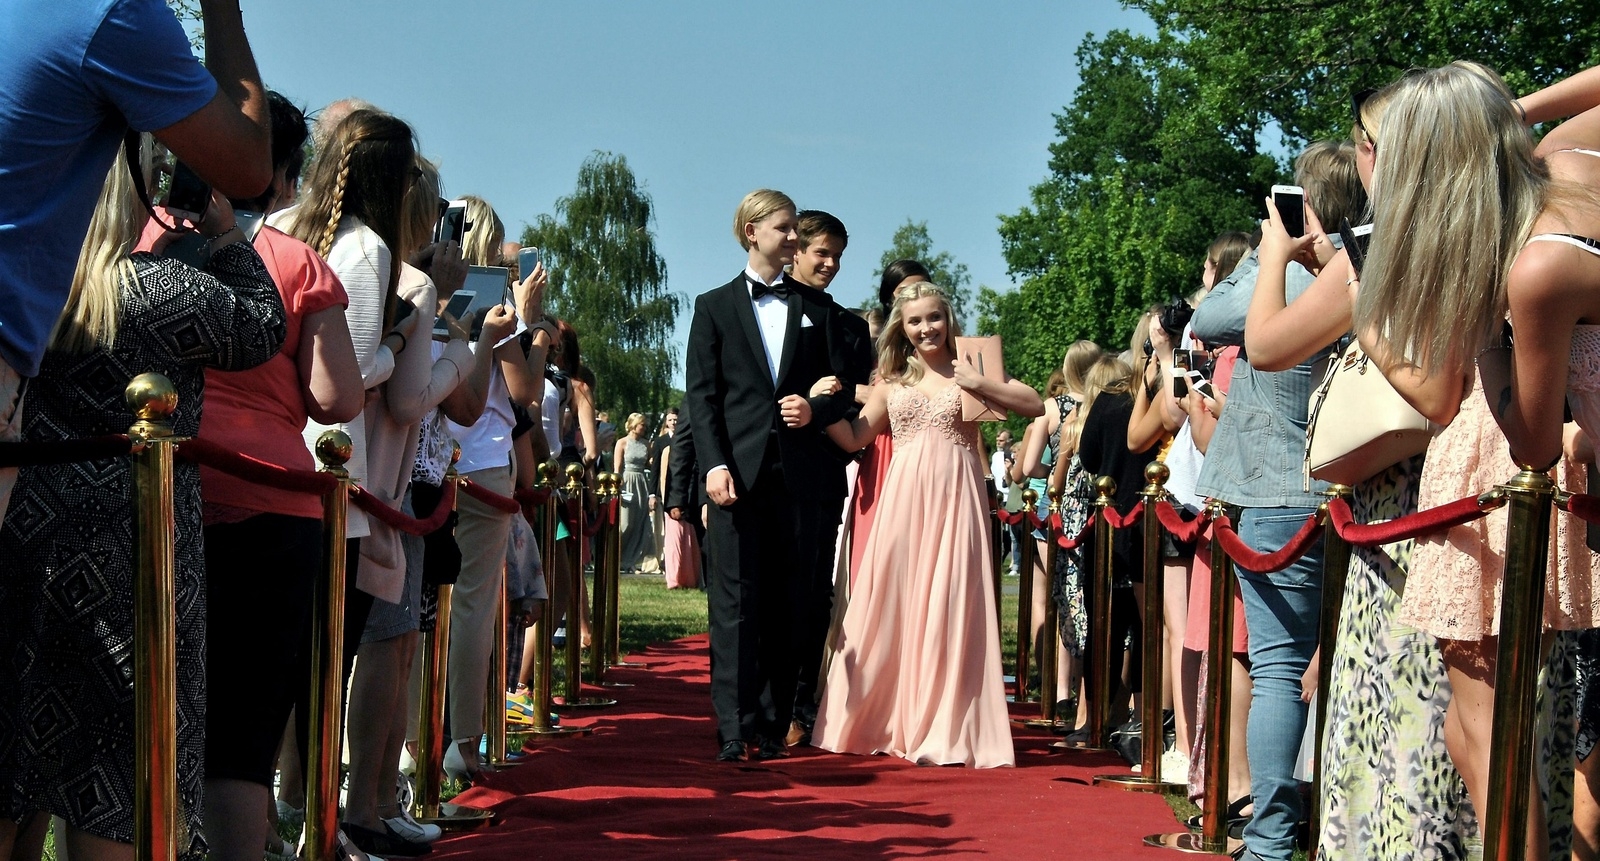 Lukas Björkheim och Julia Persson såg fram emot middagen och festen, men säger att studenten nog kommer att bli ännu roligare. Foto: Nils Jönsson